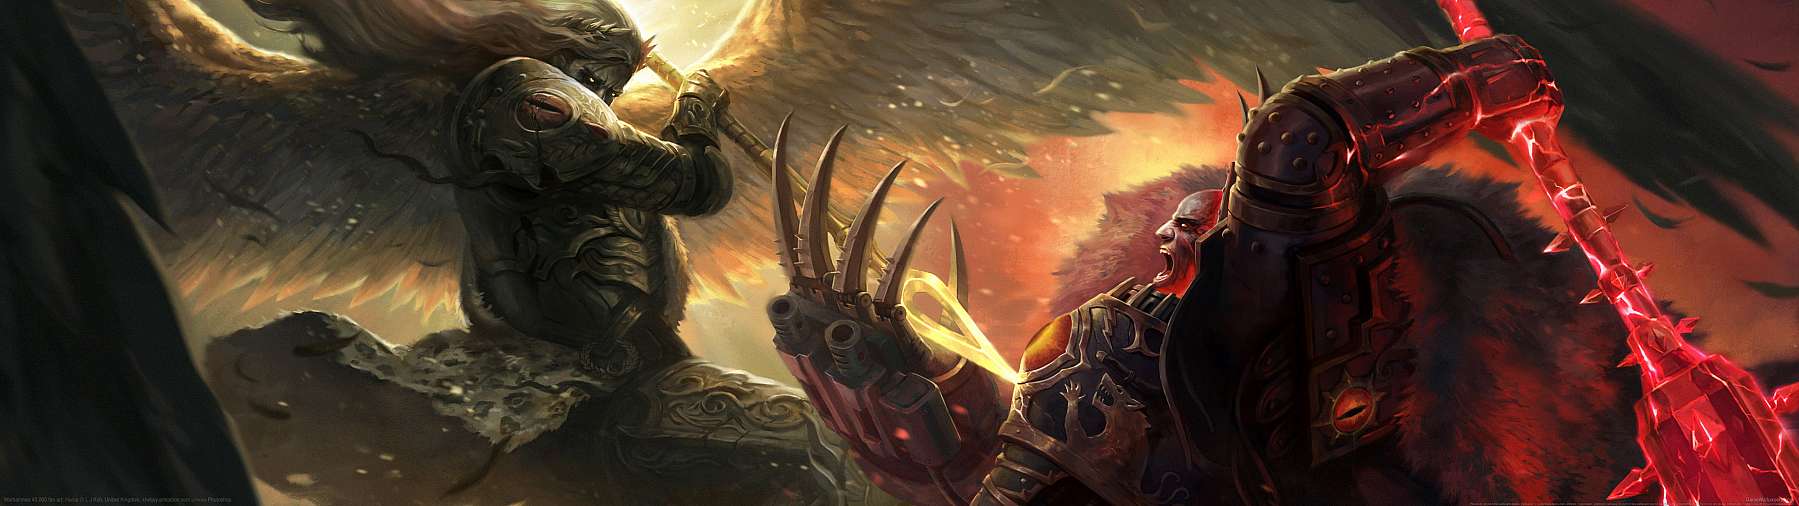 Warhammer 40,000 fan art superwide achtergrond 03